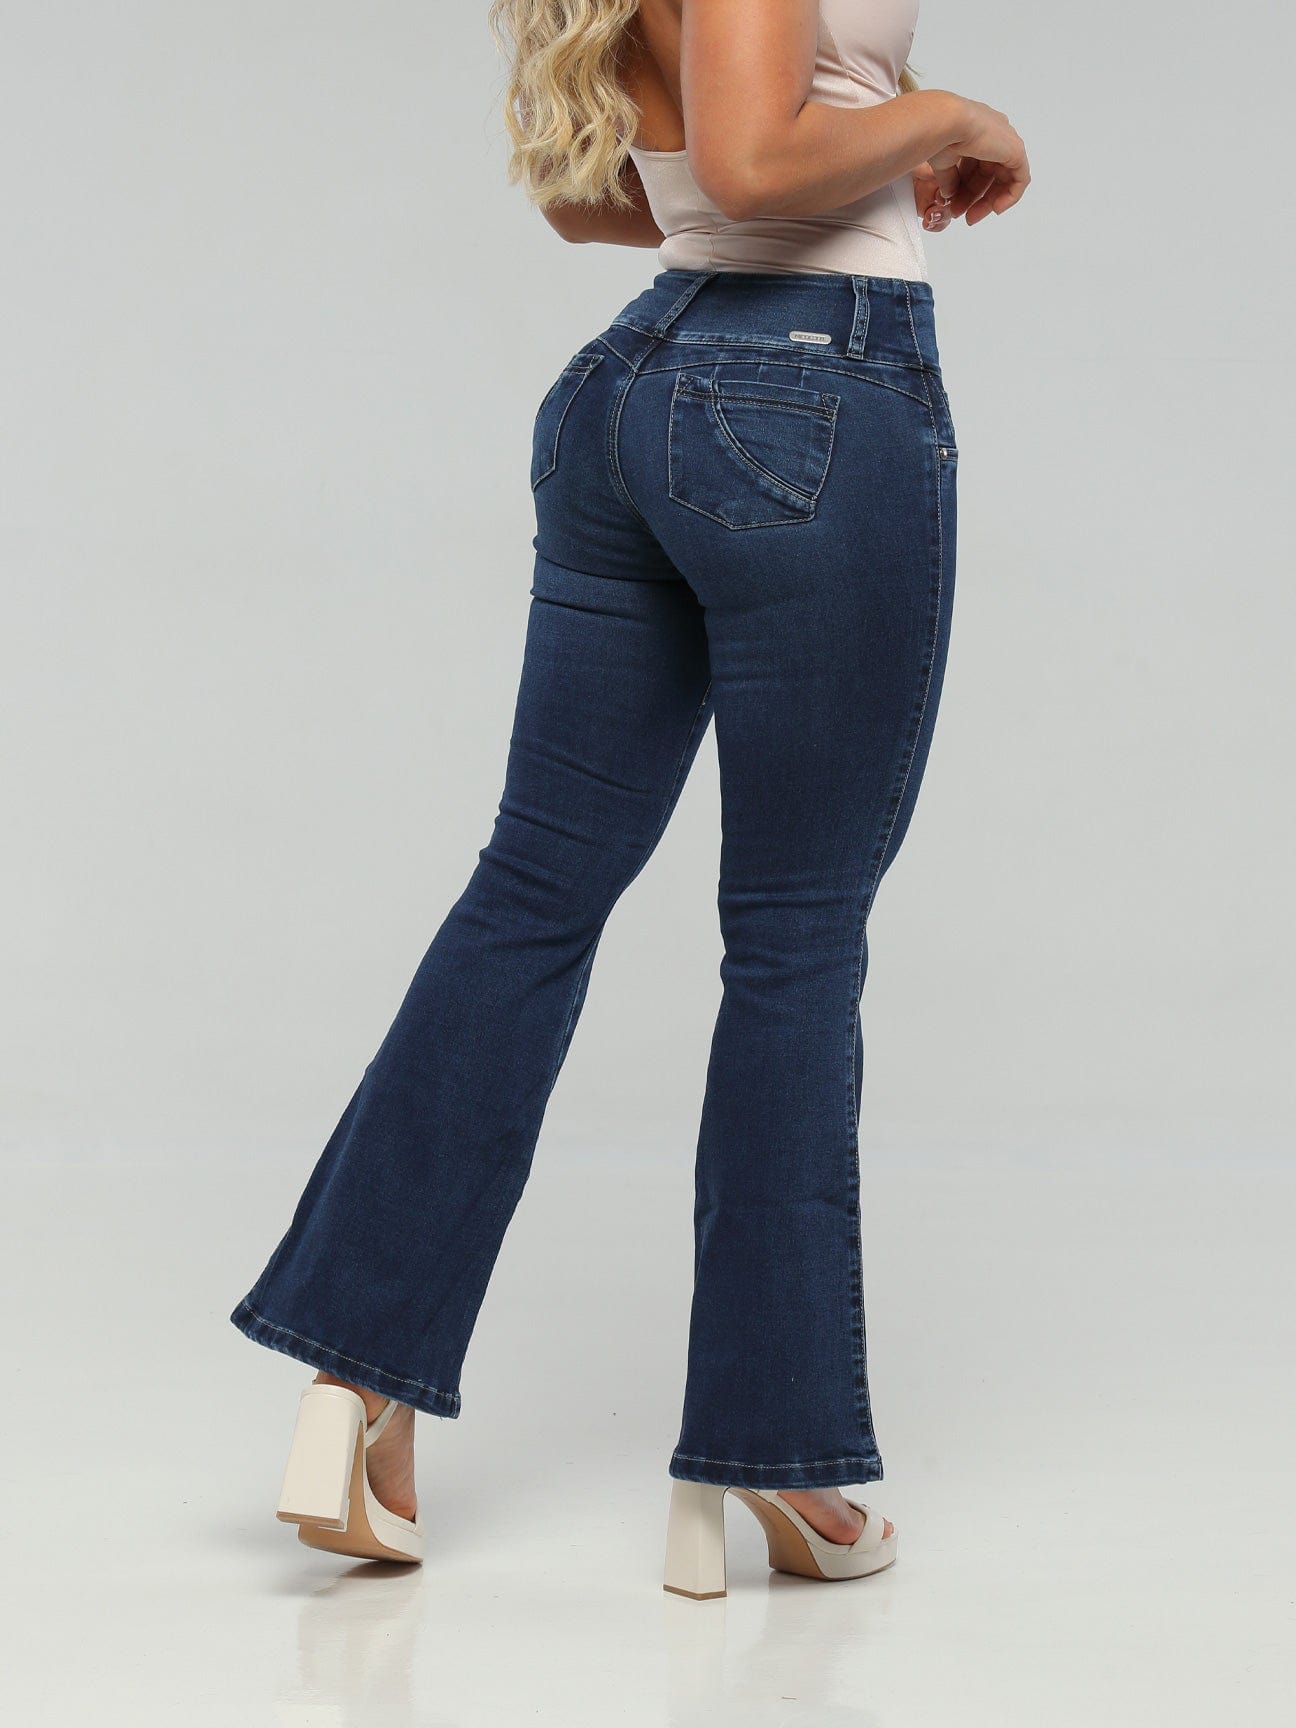 Apple Butt Lift Jeans 15163